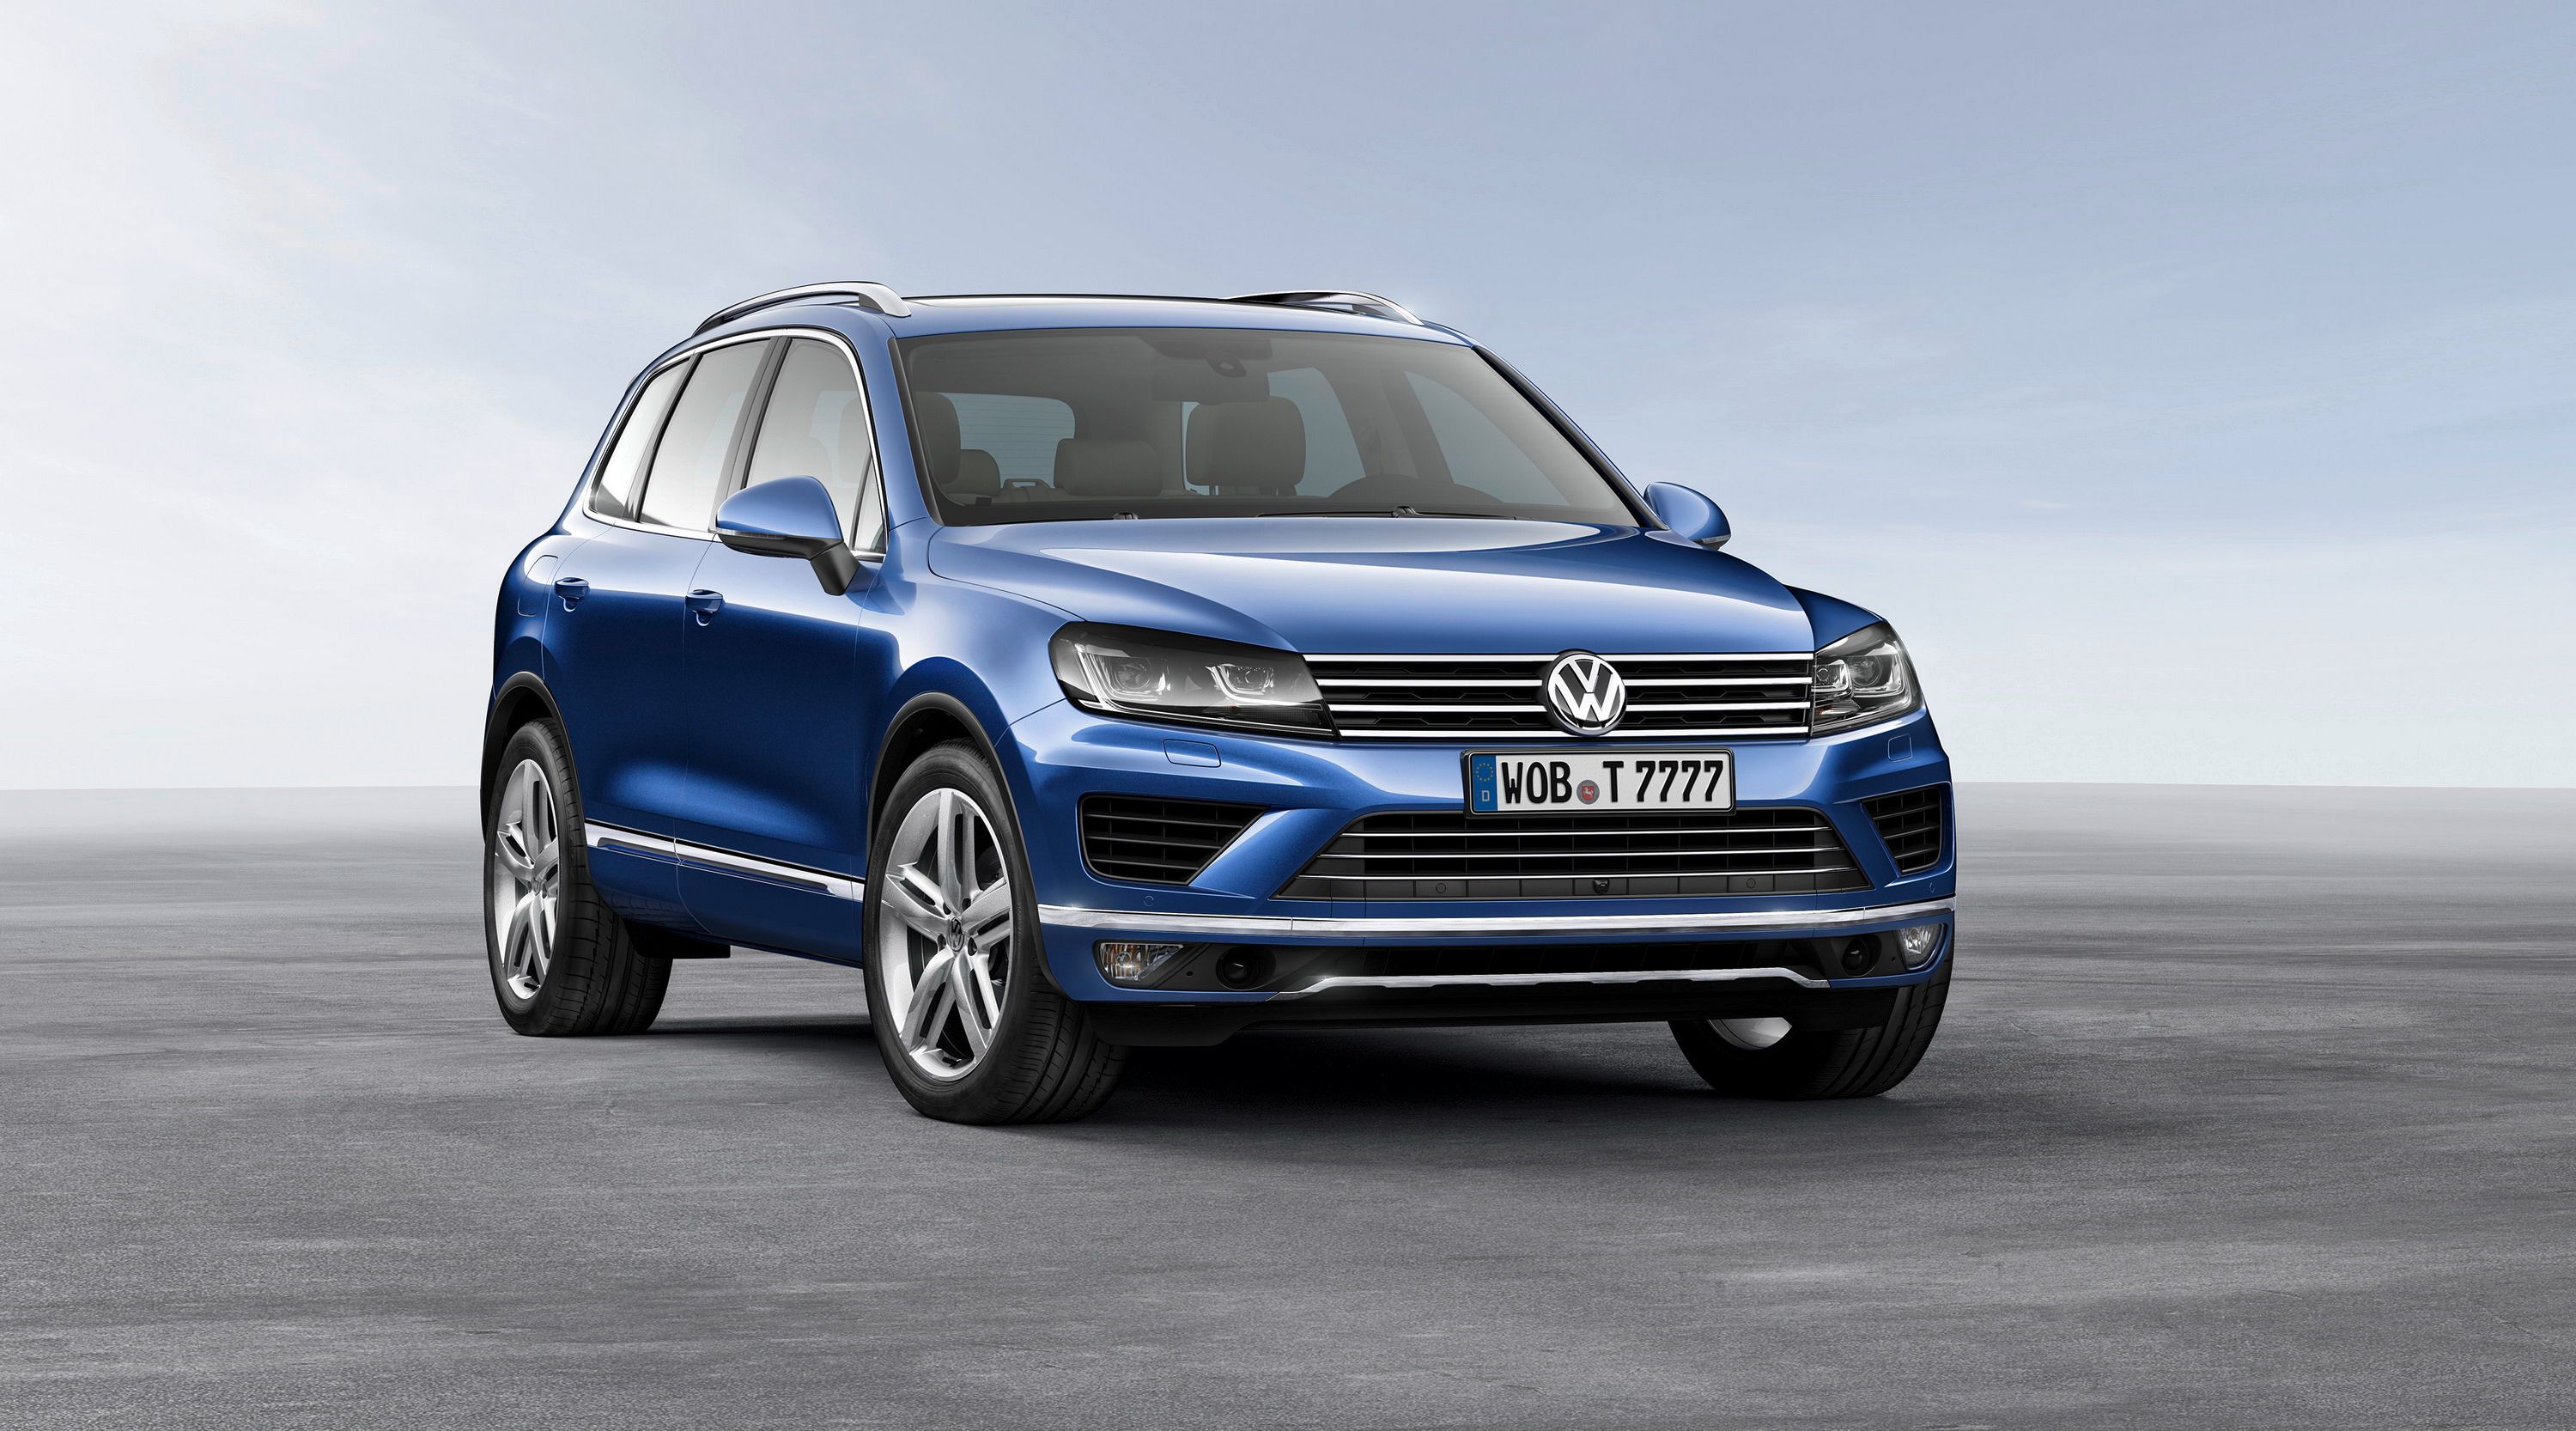 2016 Volkswagen Exec Calls Demise Of SUVs Imminent